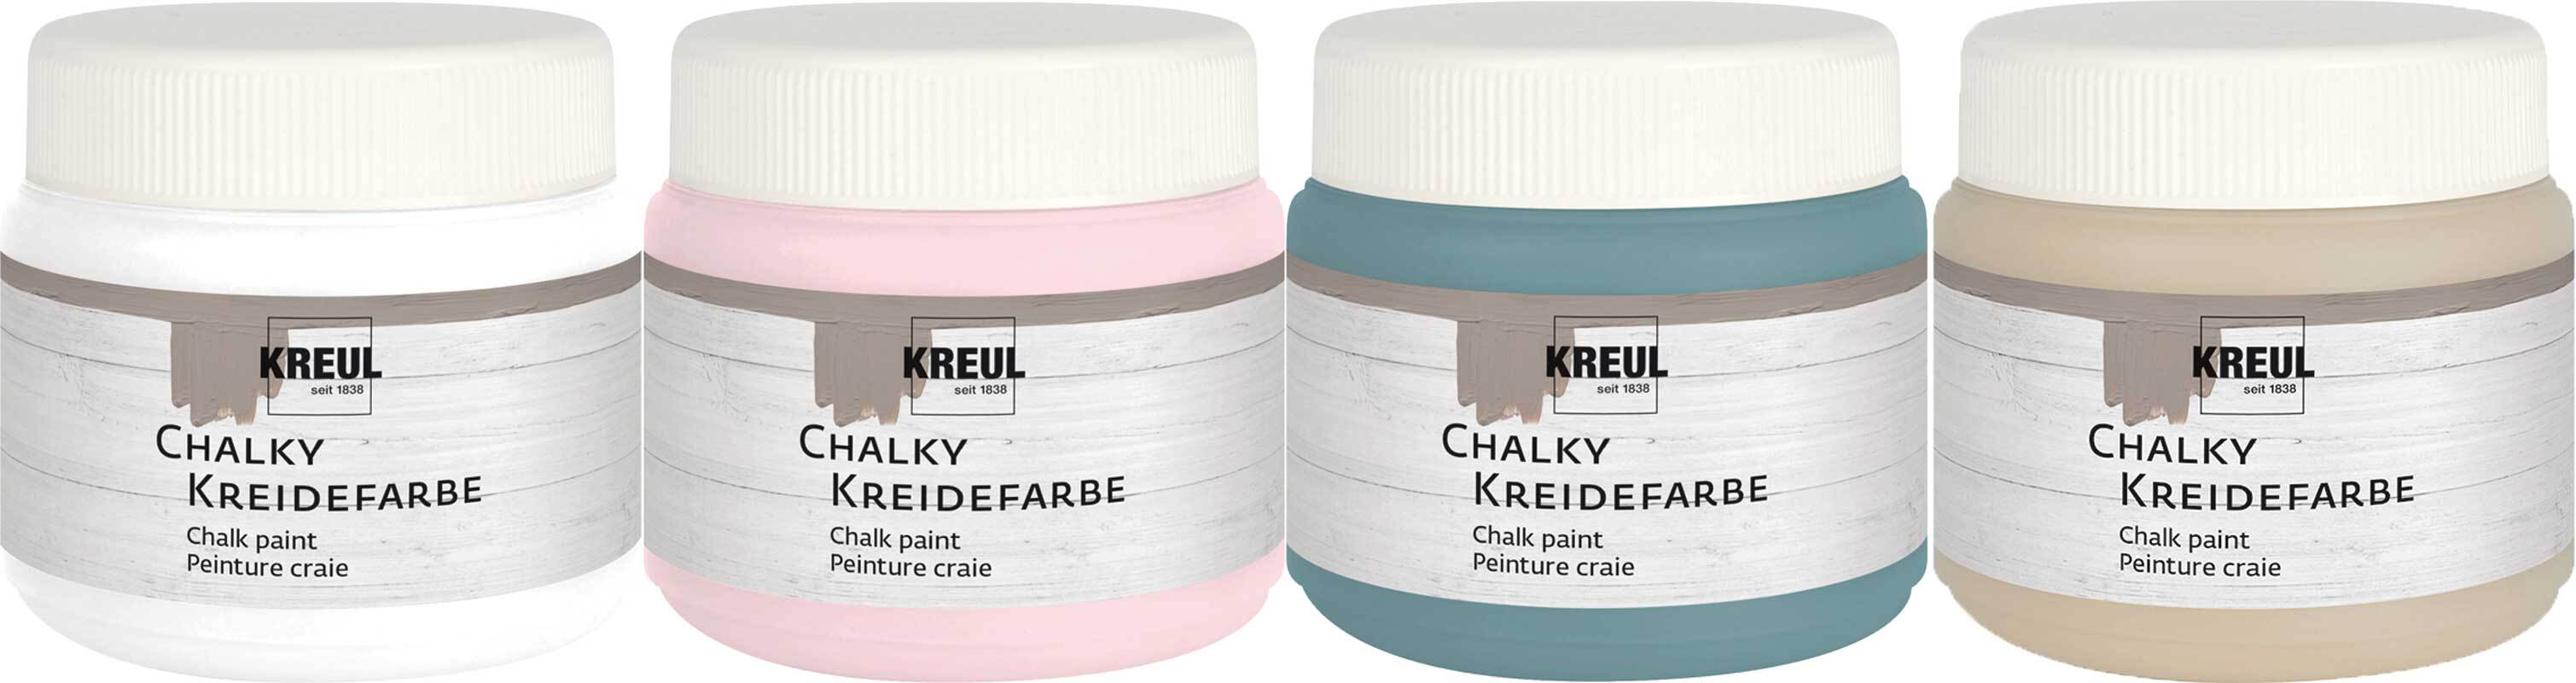 Chalky Kreidefarben - Basis Set, 4 Farben